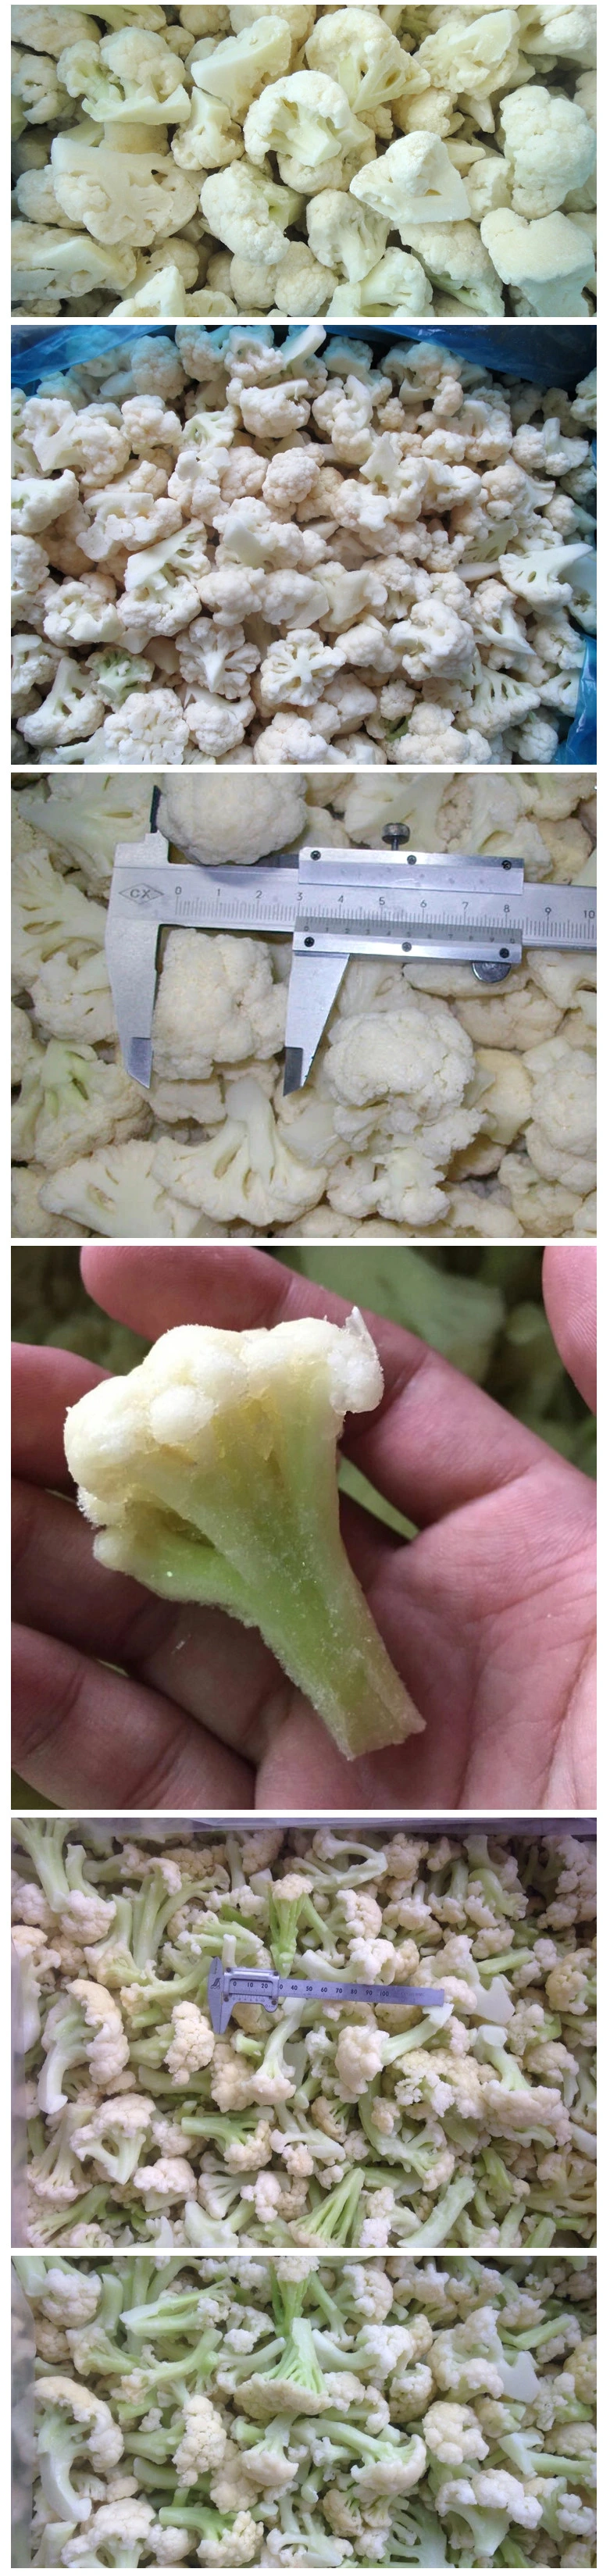 New Crop Premium Quality IQF Frozen Cauliflower with Good Prices Frozen Vegetables Cauliflower